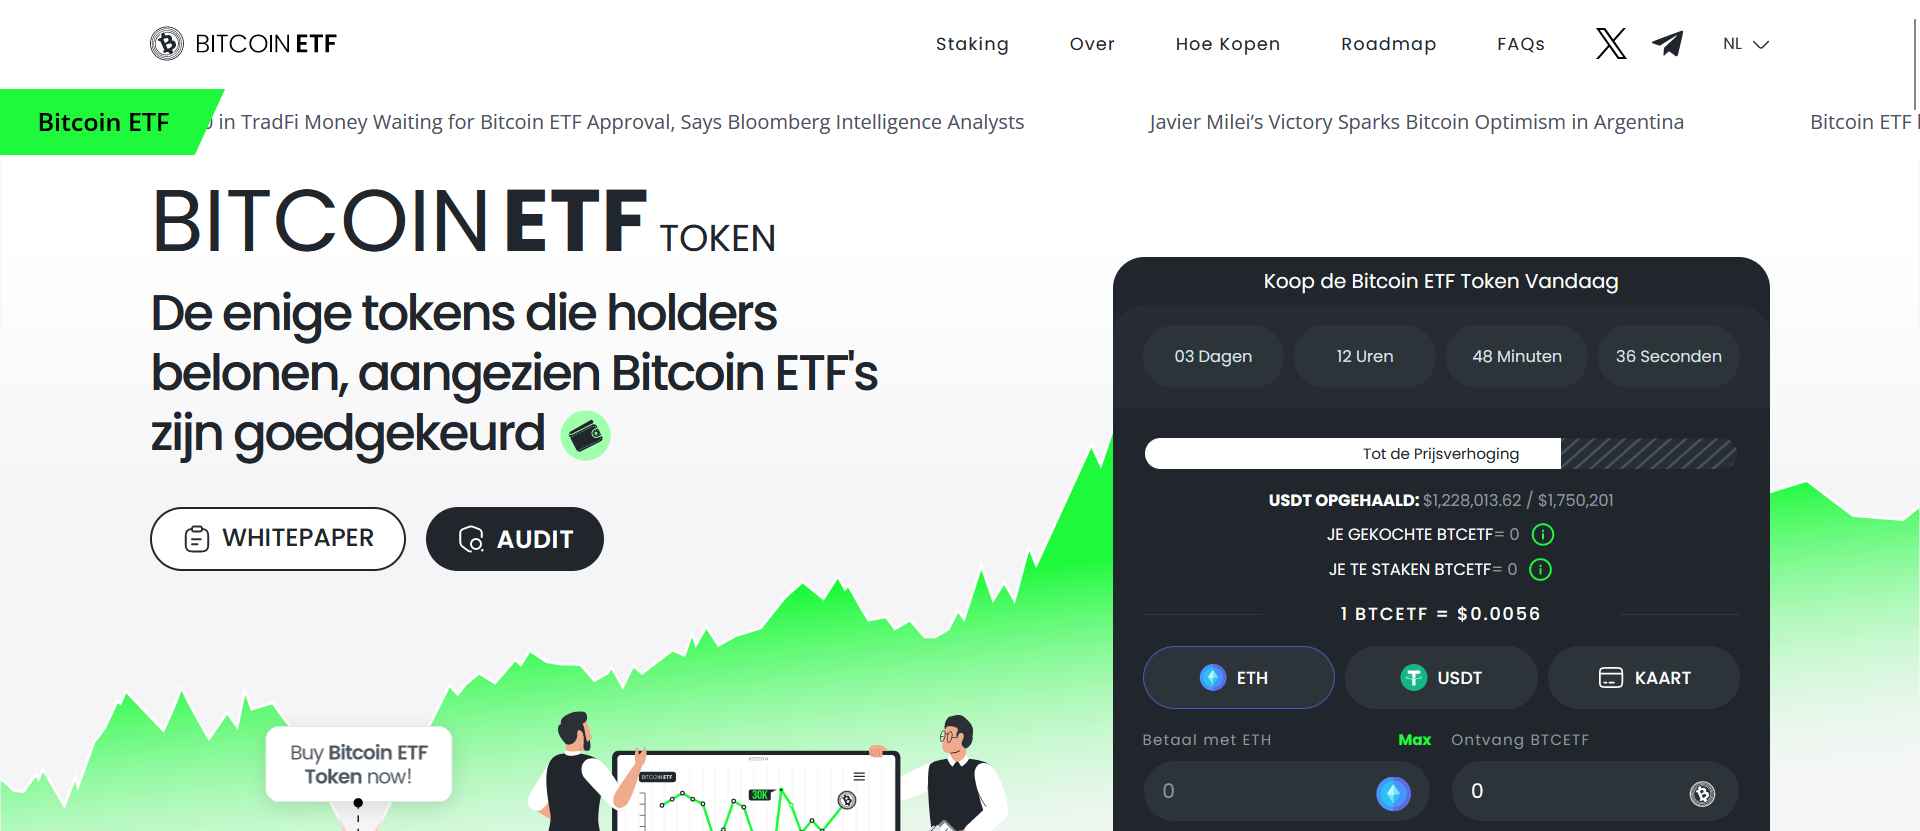 Bitcoin ETF token - beste beleggingsalternatief voor bitcoin halving